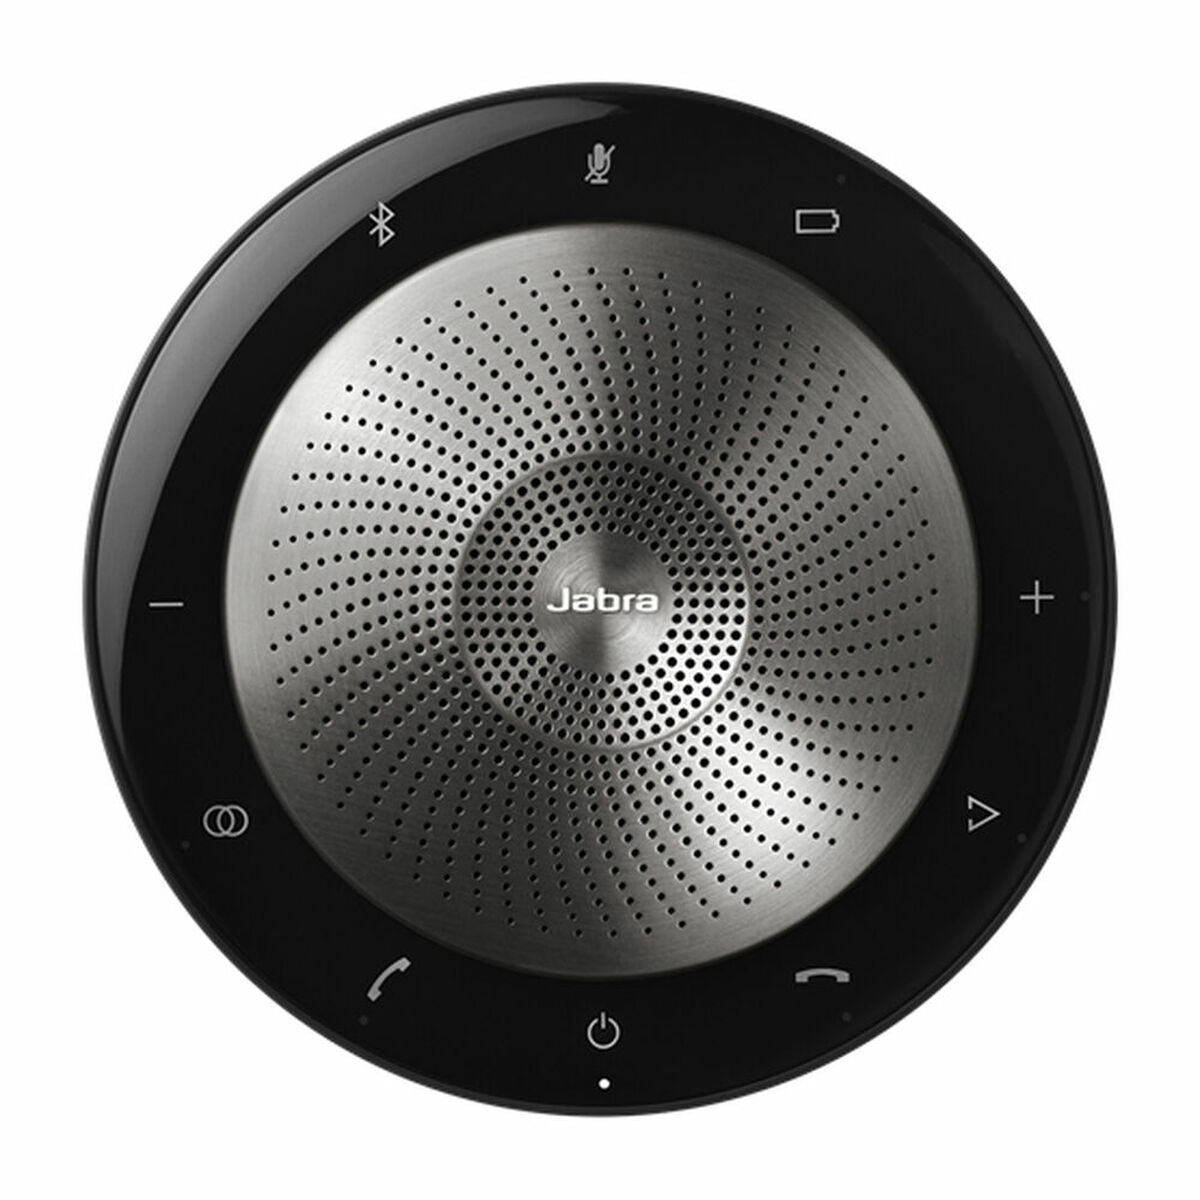 Draagbaar luidsprekersysteem Jabra 7710-409 Zwart Zilverkleurig 10 W